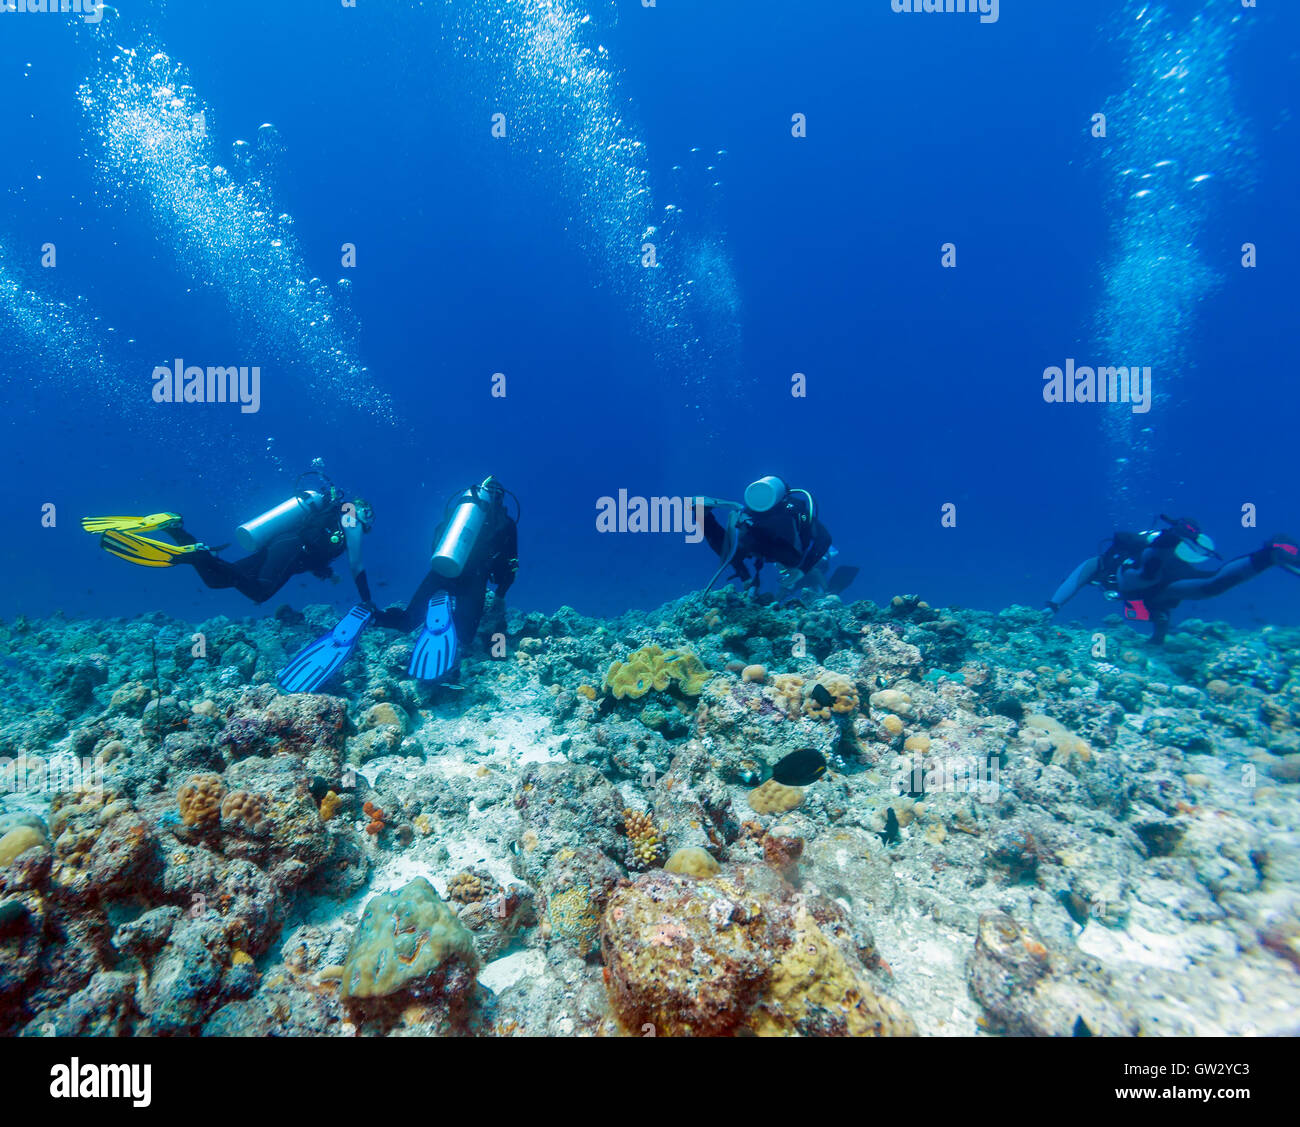 Groupe de plongeurs pendaison le mur du récif à fort courant, Maldives Banque D'Images